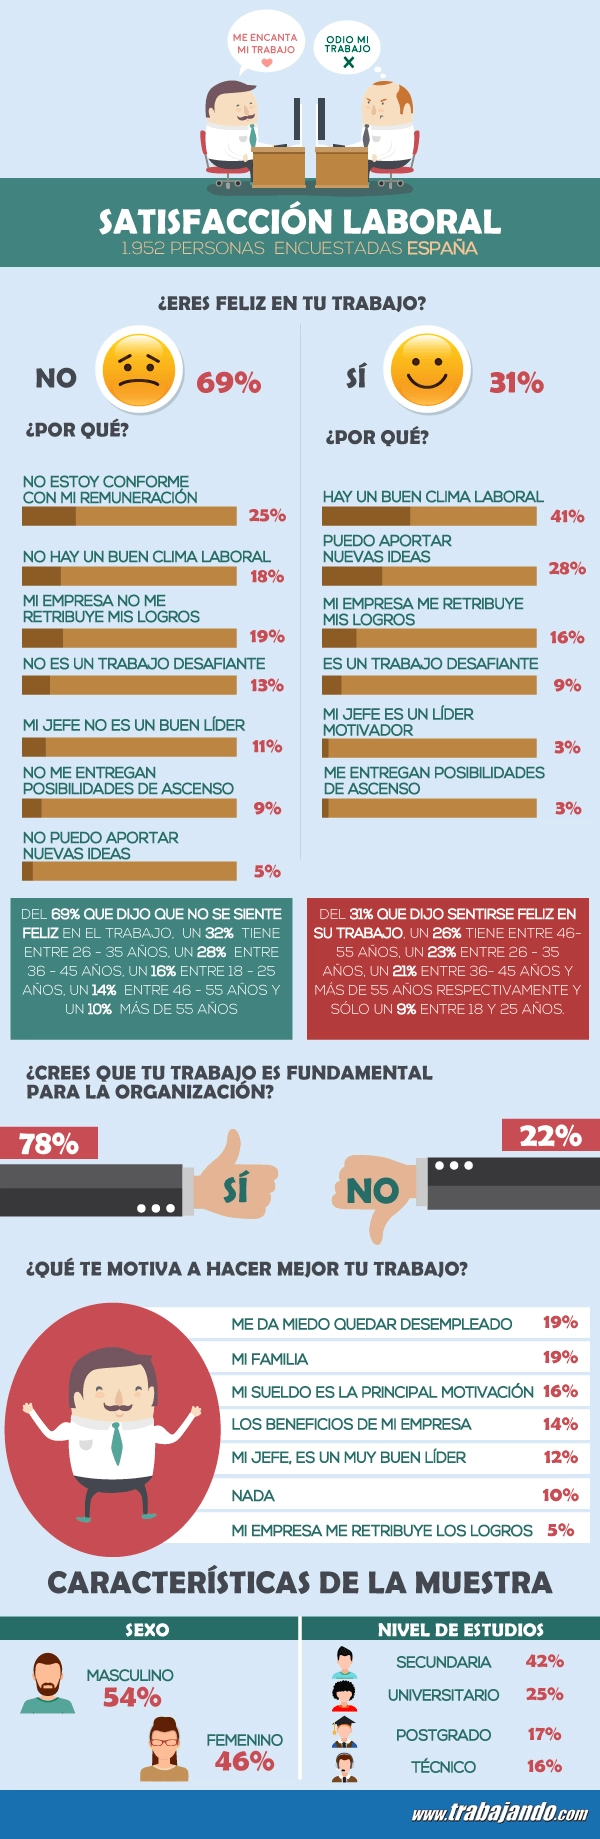 ¿Eres feliz en tu trabajo? Casi el 70% de los españoles lo afirman